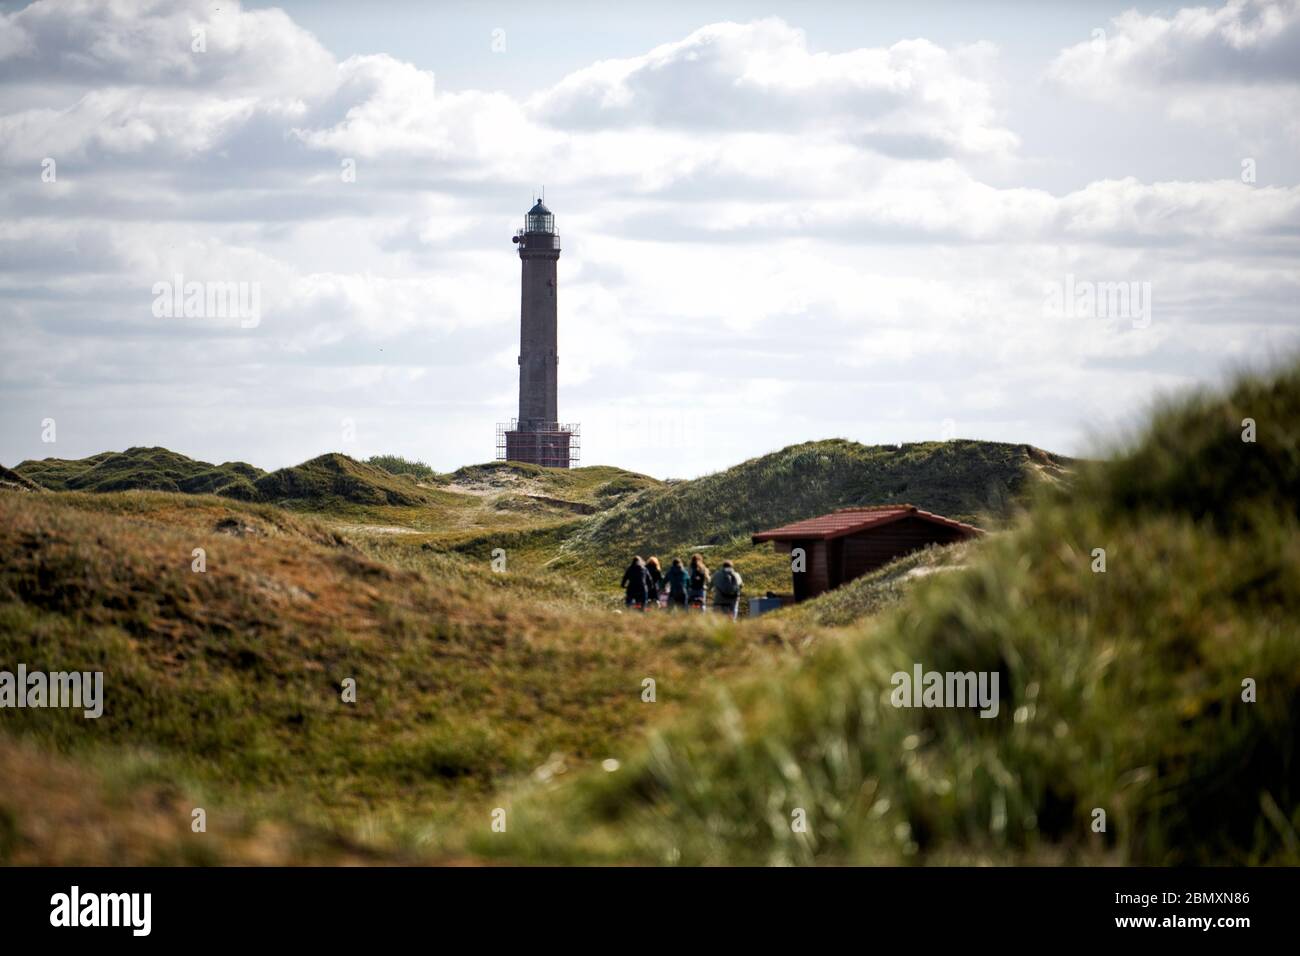 Der Leuchtturm von Norderney durch Duenen hindurch fotografiert mit einer Gruppe Wanderer auf dem Weg zu ihm. Stock Photo